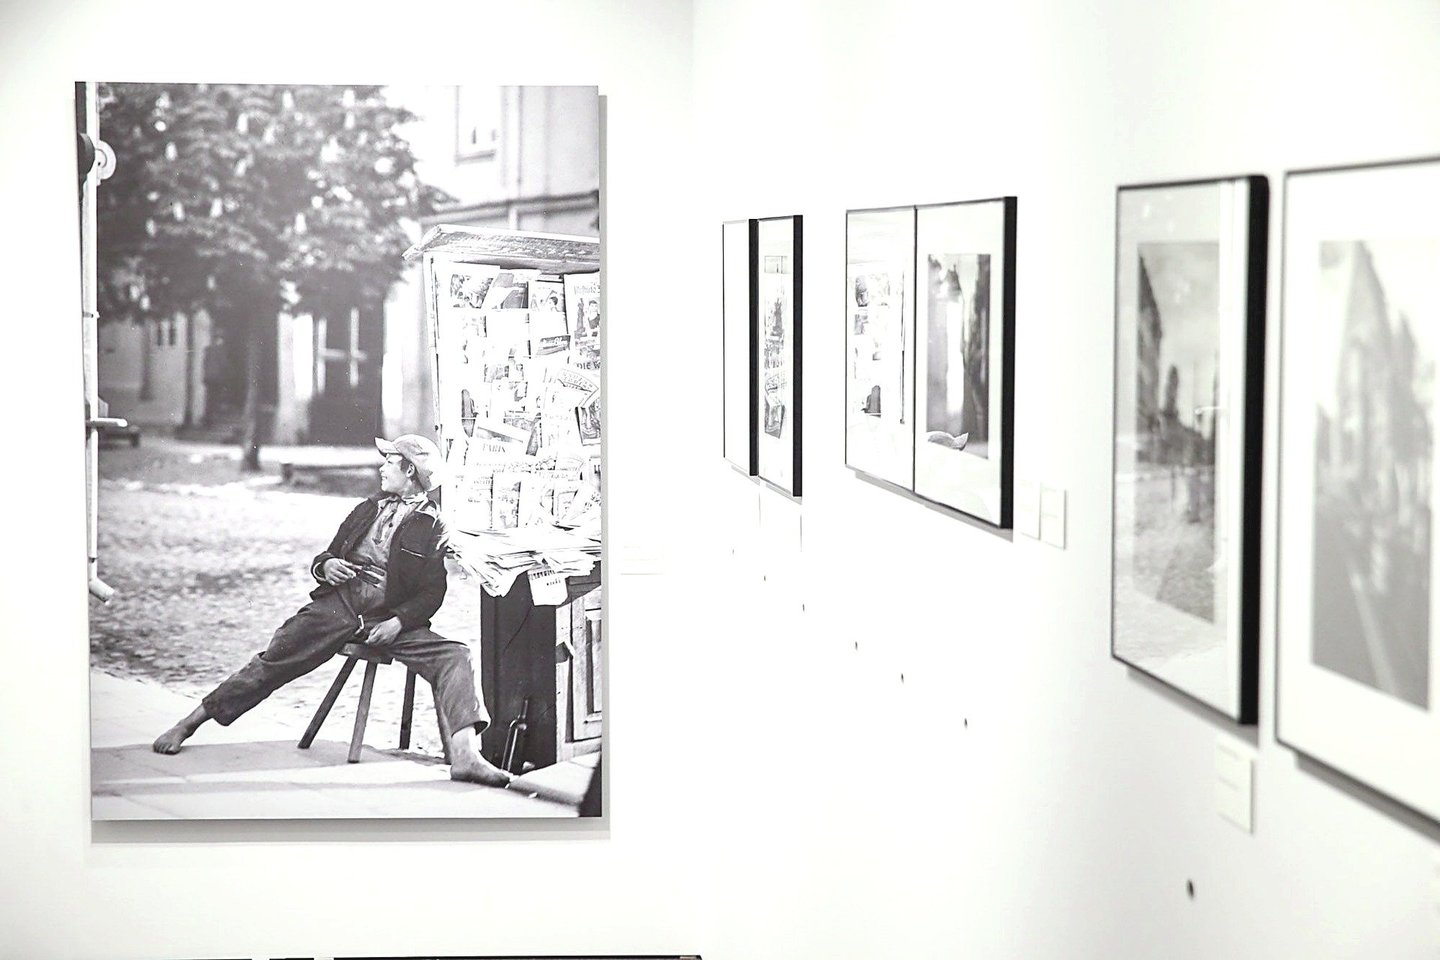 Istorijų namuose surengtoje savitoje parodoje – prieš šimtmetį užfiksuoti laikinosios sostinės vaizdai.<br>R.Danisevičiaus nuotr. 